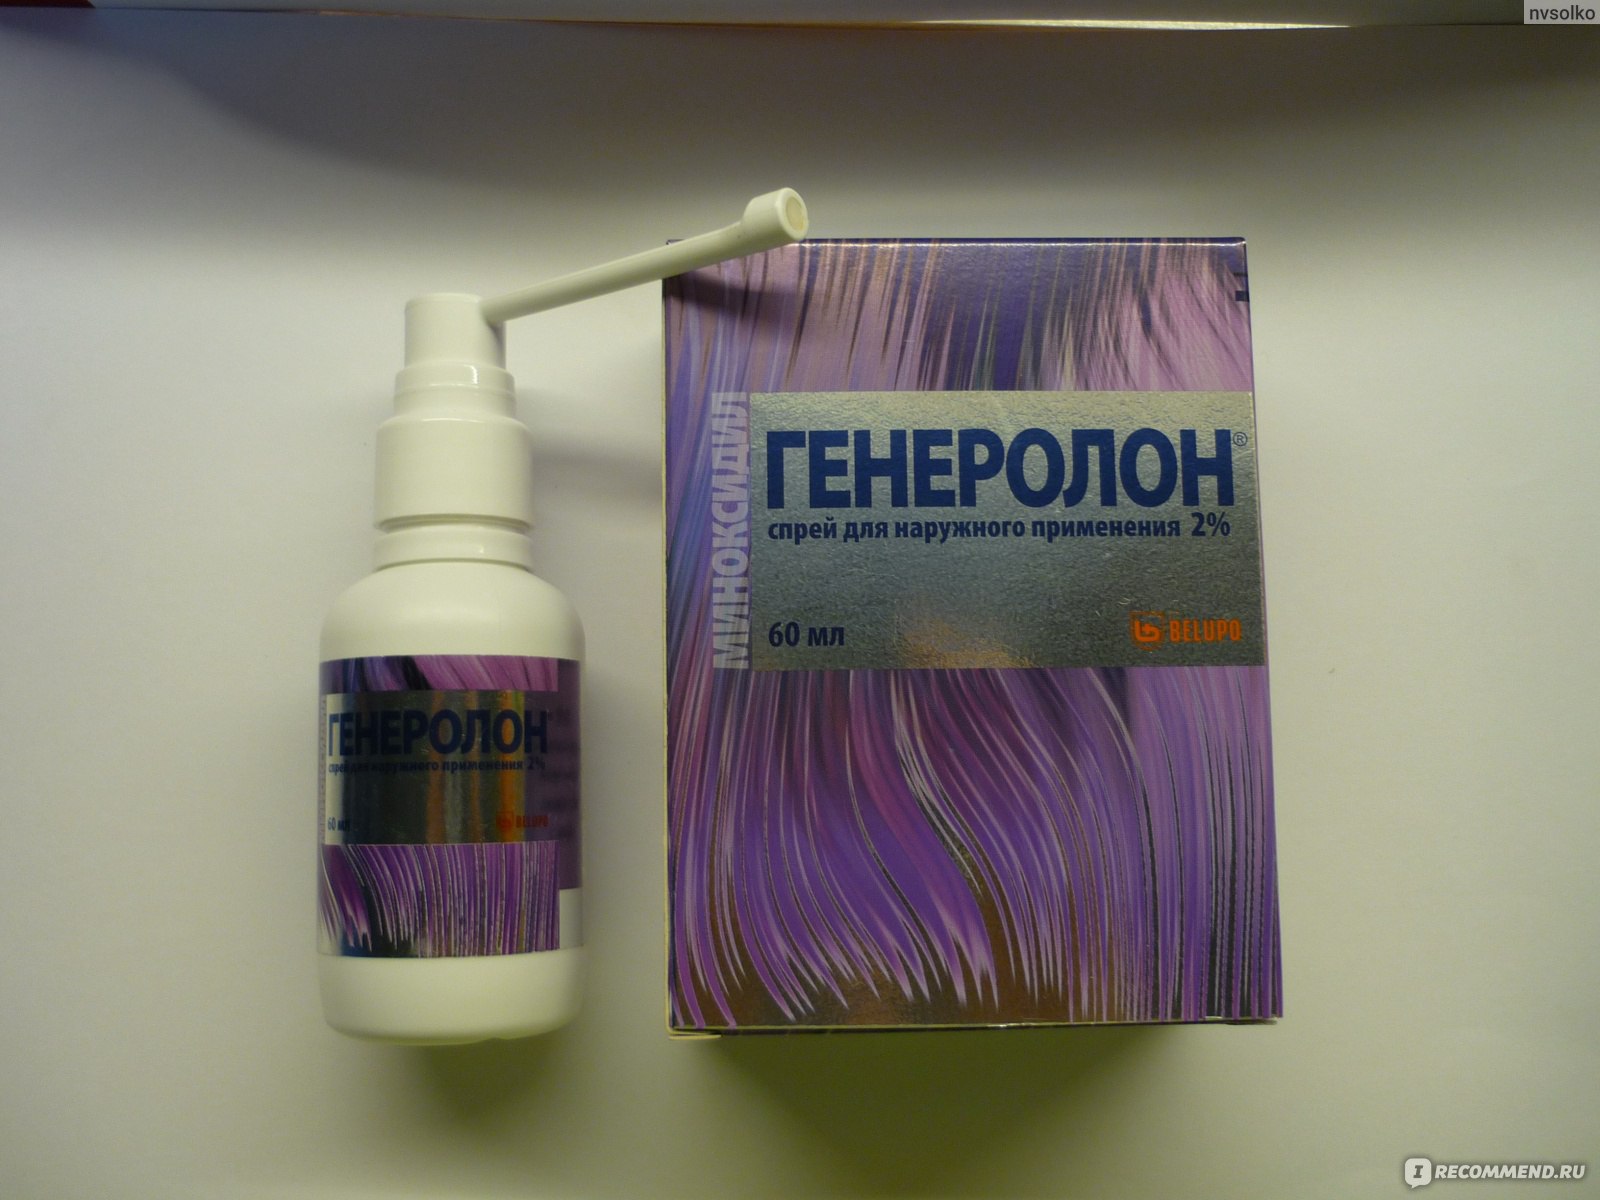 Спрей для волос Генеролон (спрей для наружного применения 2% .